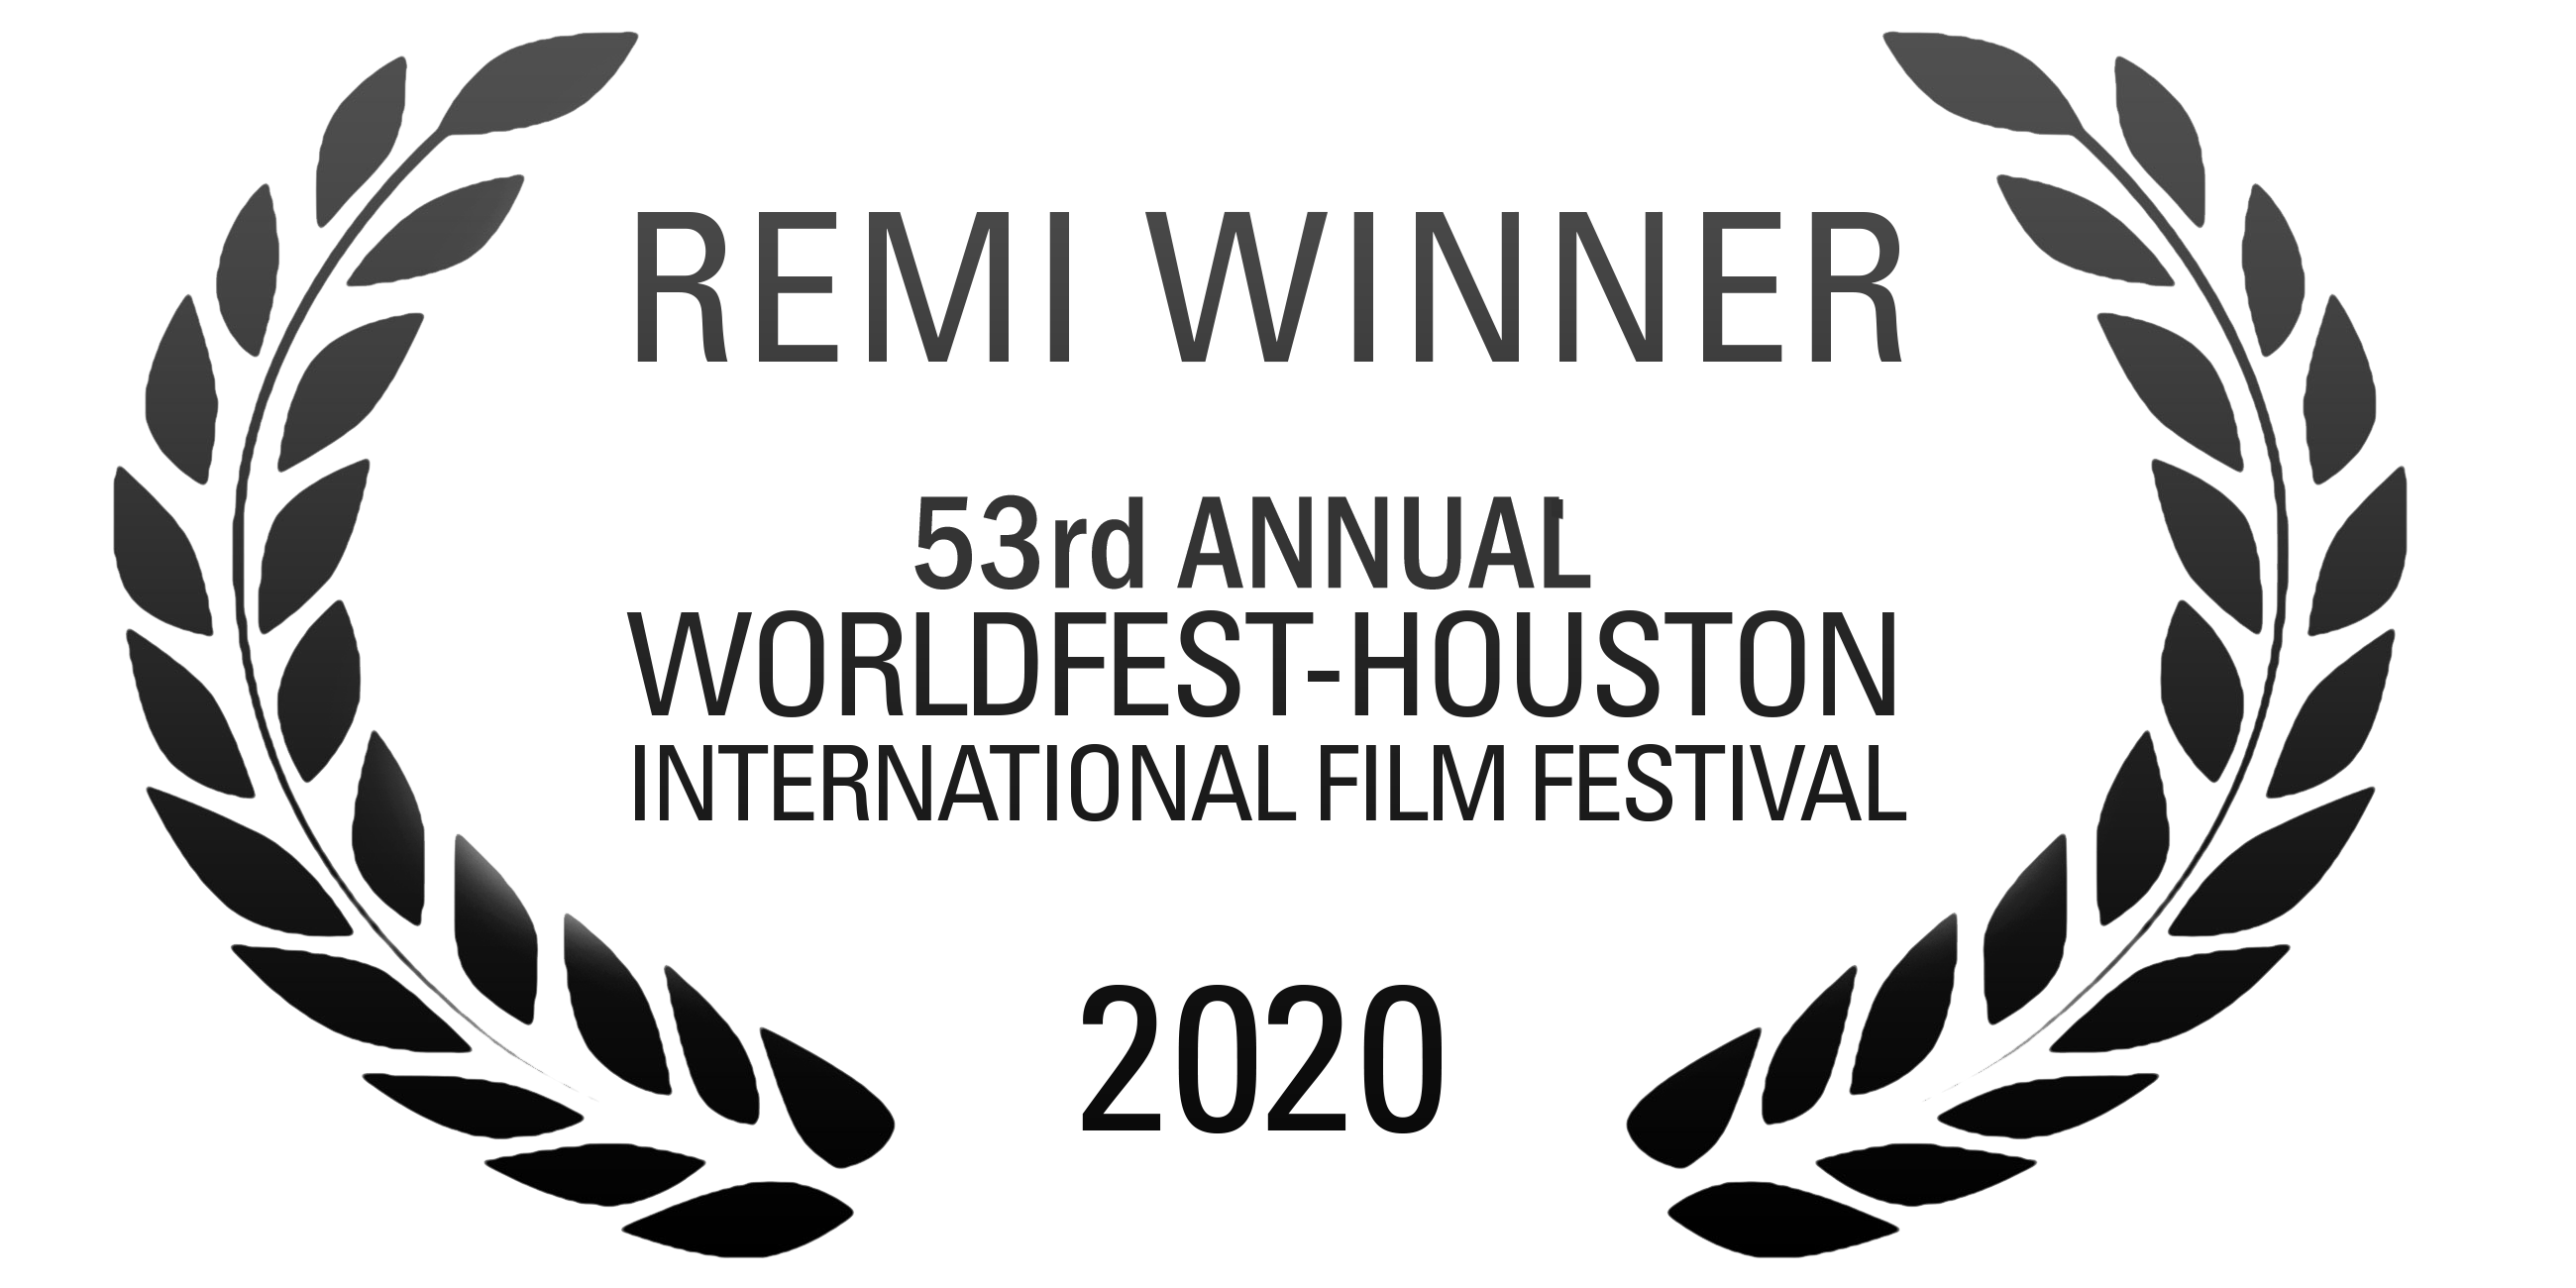 Remi Winner 53rd Annual Worldfest-Houston International Film Festival 2020